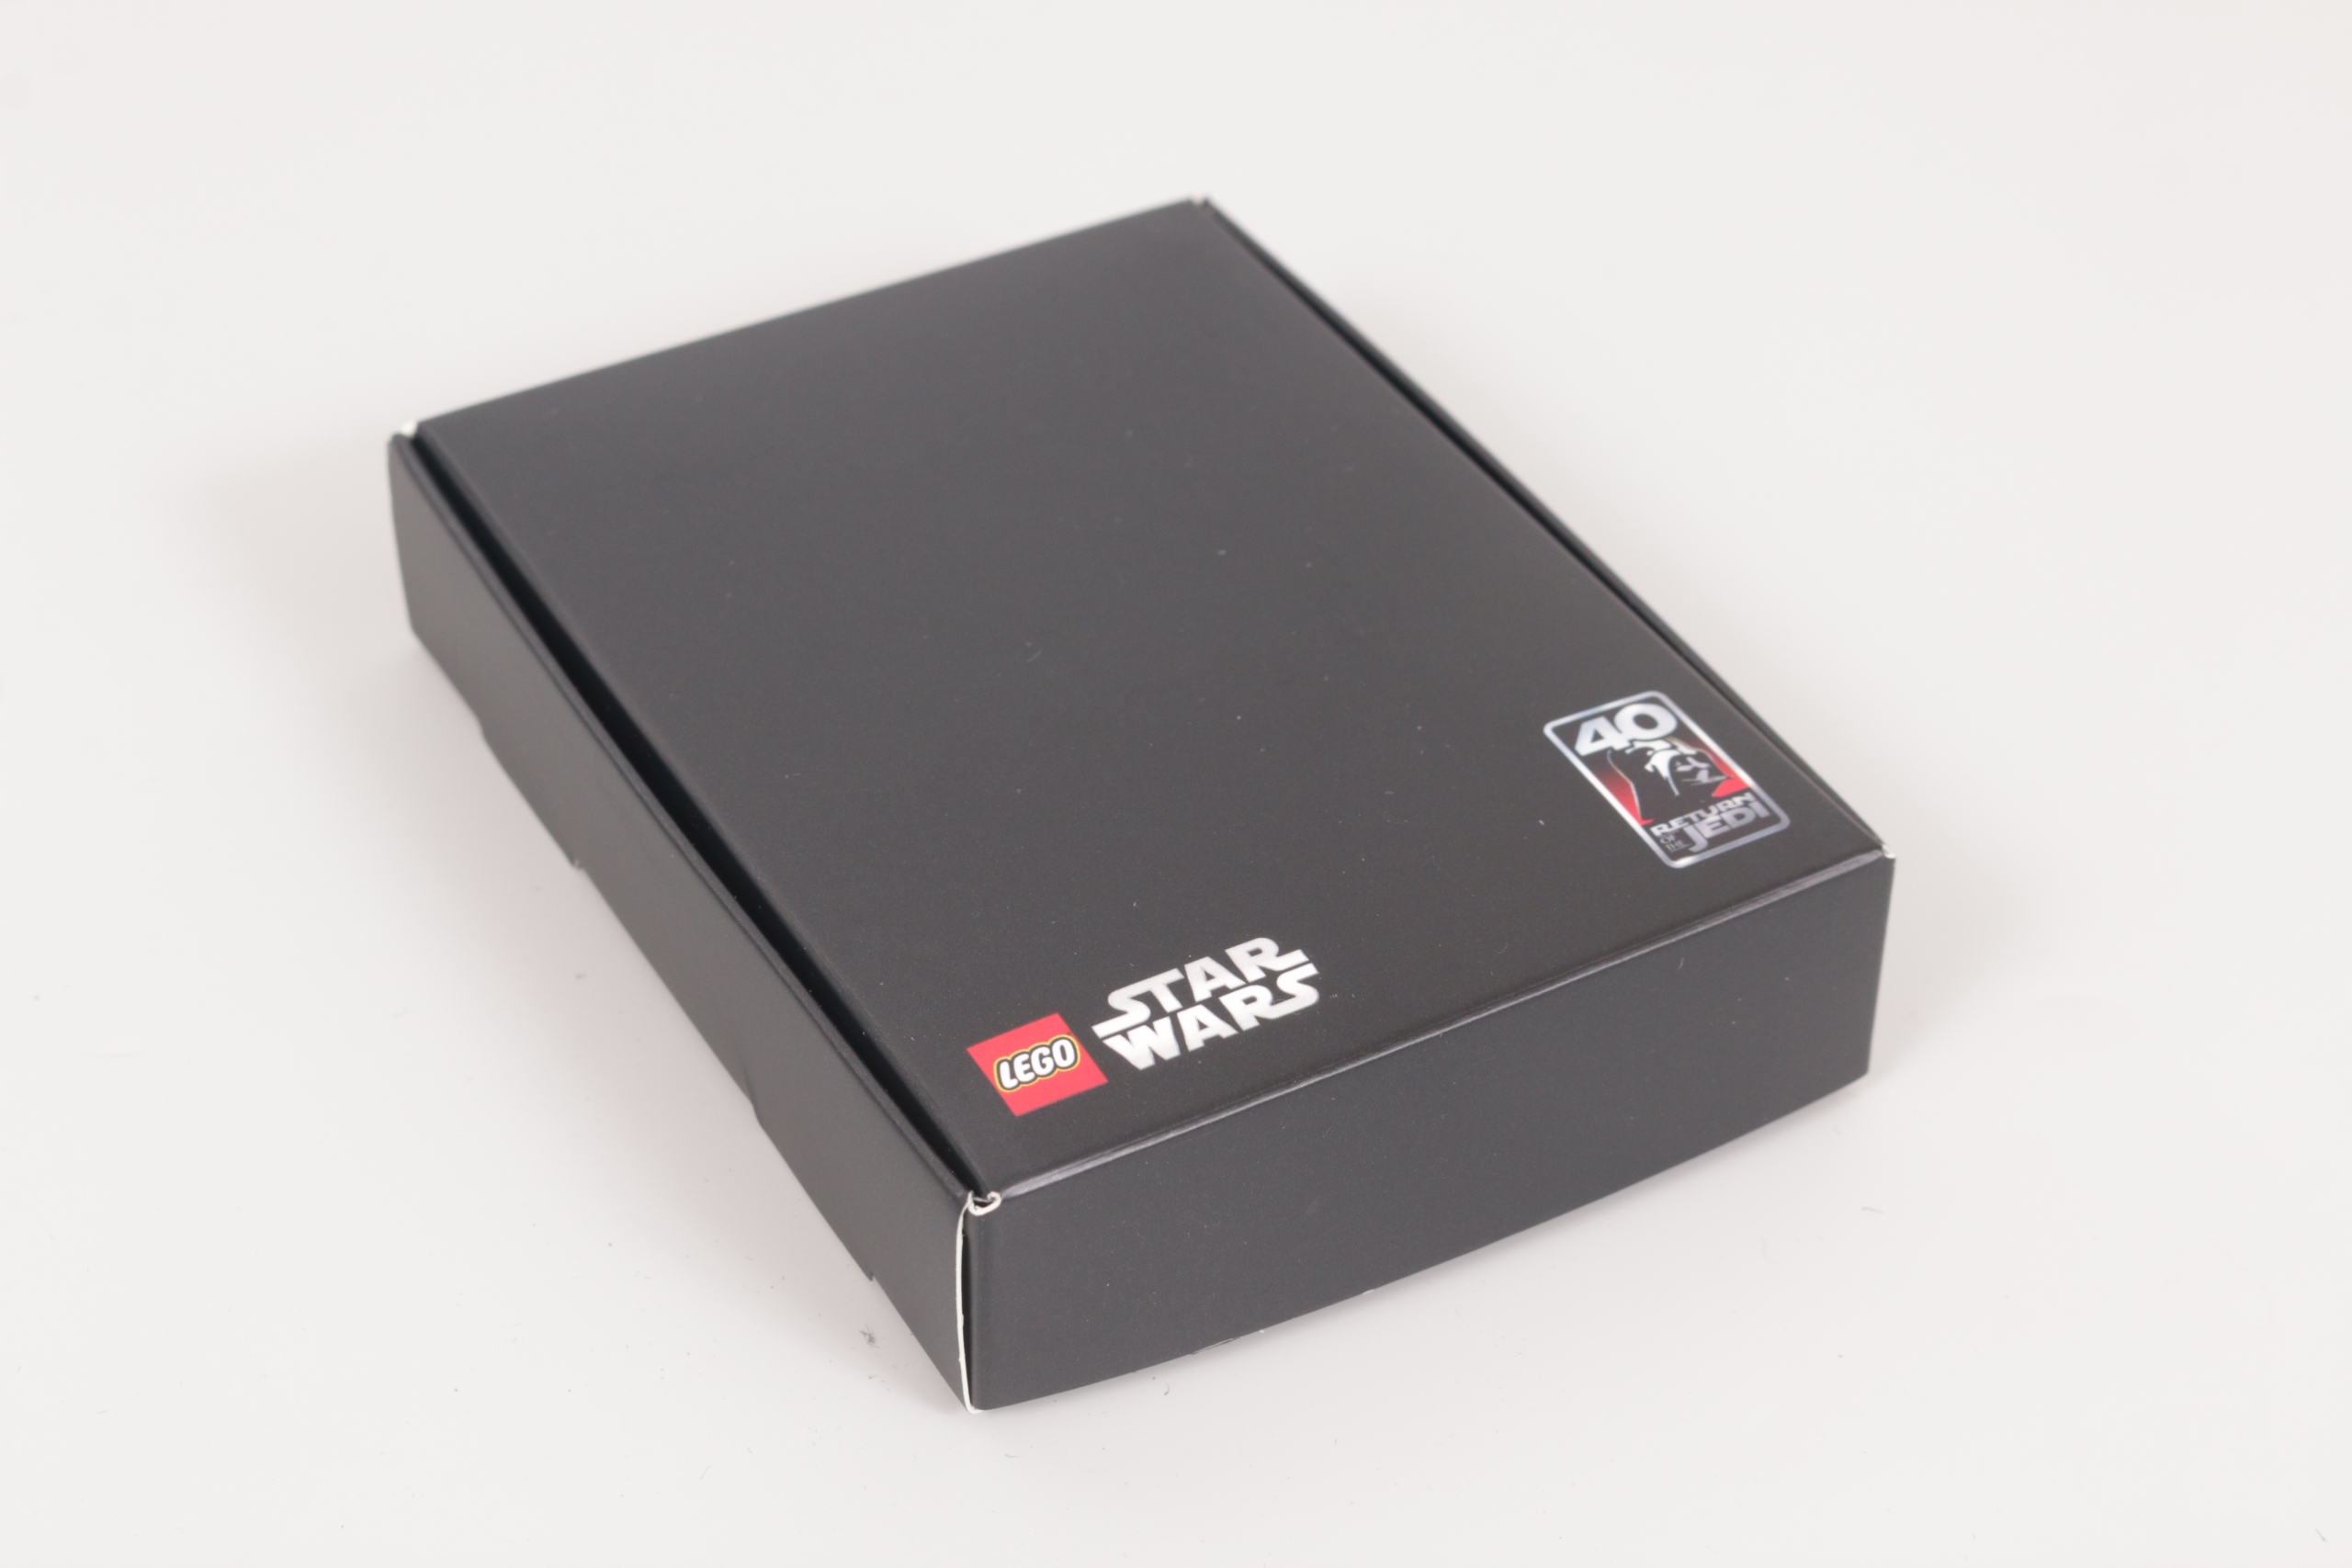 Brickfinder - Return of The LEGO Star Wars Gift Box!